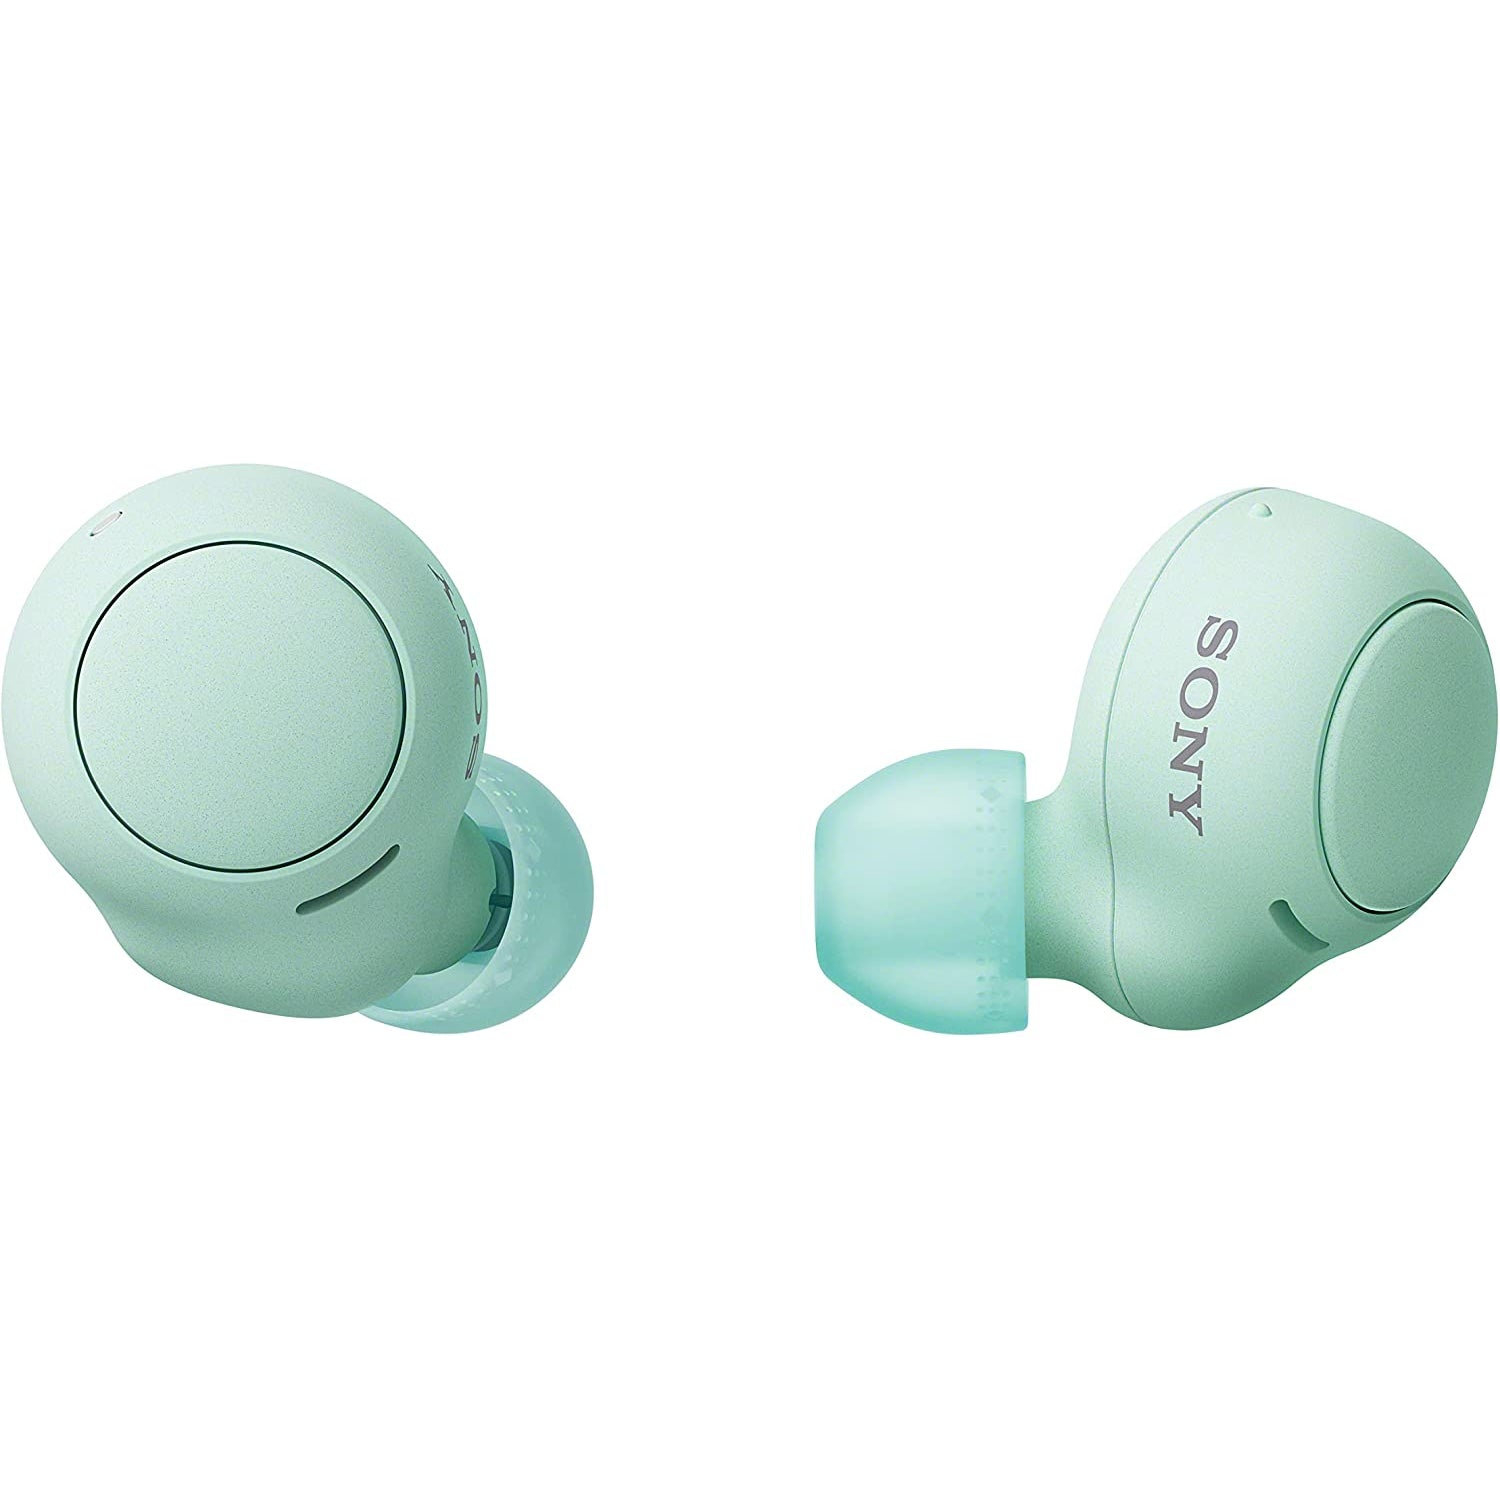 Sony WF-C500 Wireless Earbuds - Green - Refurbished Pristine